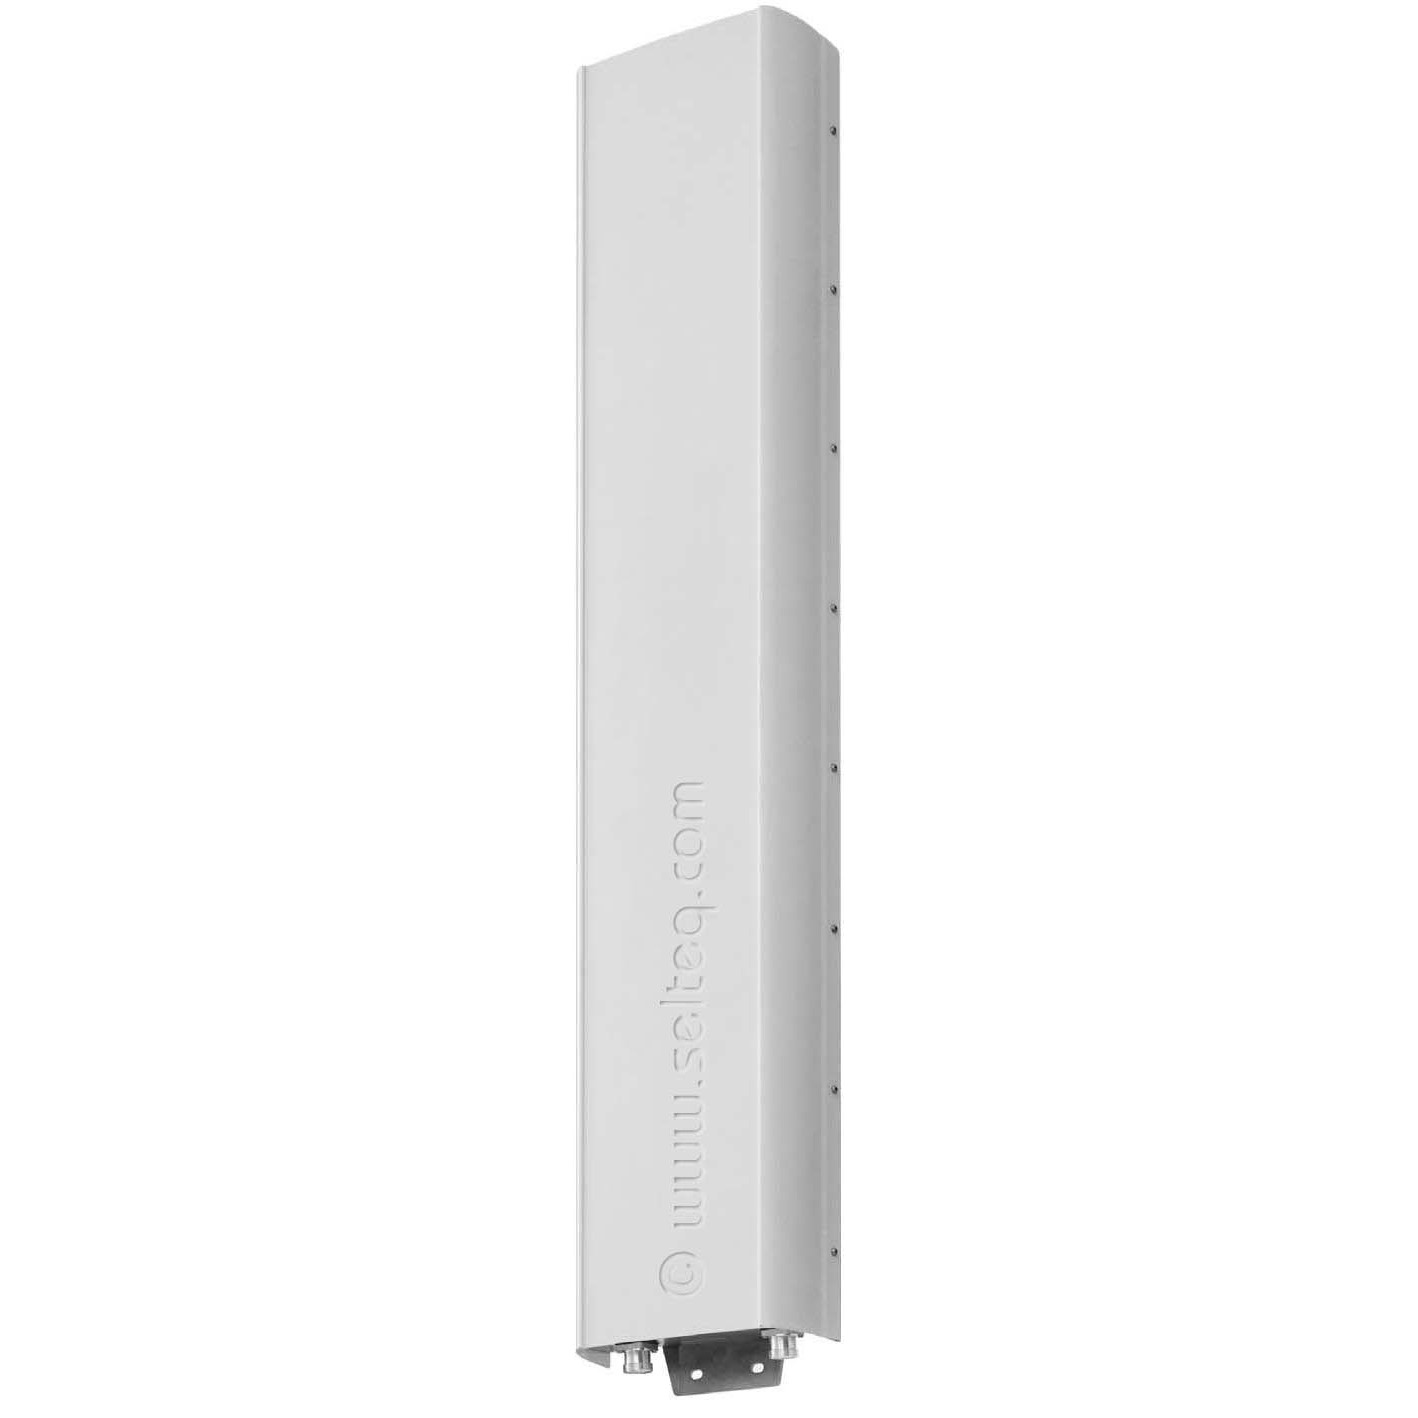 antenna Kathrein 800 10202 V02